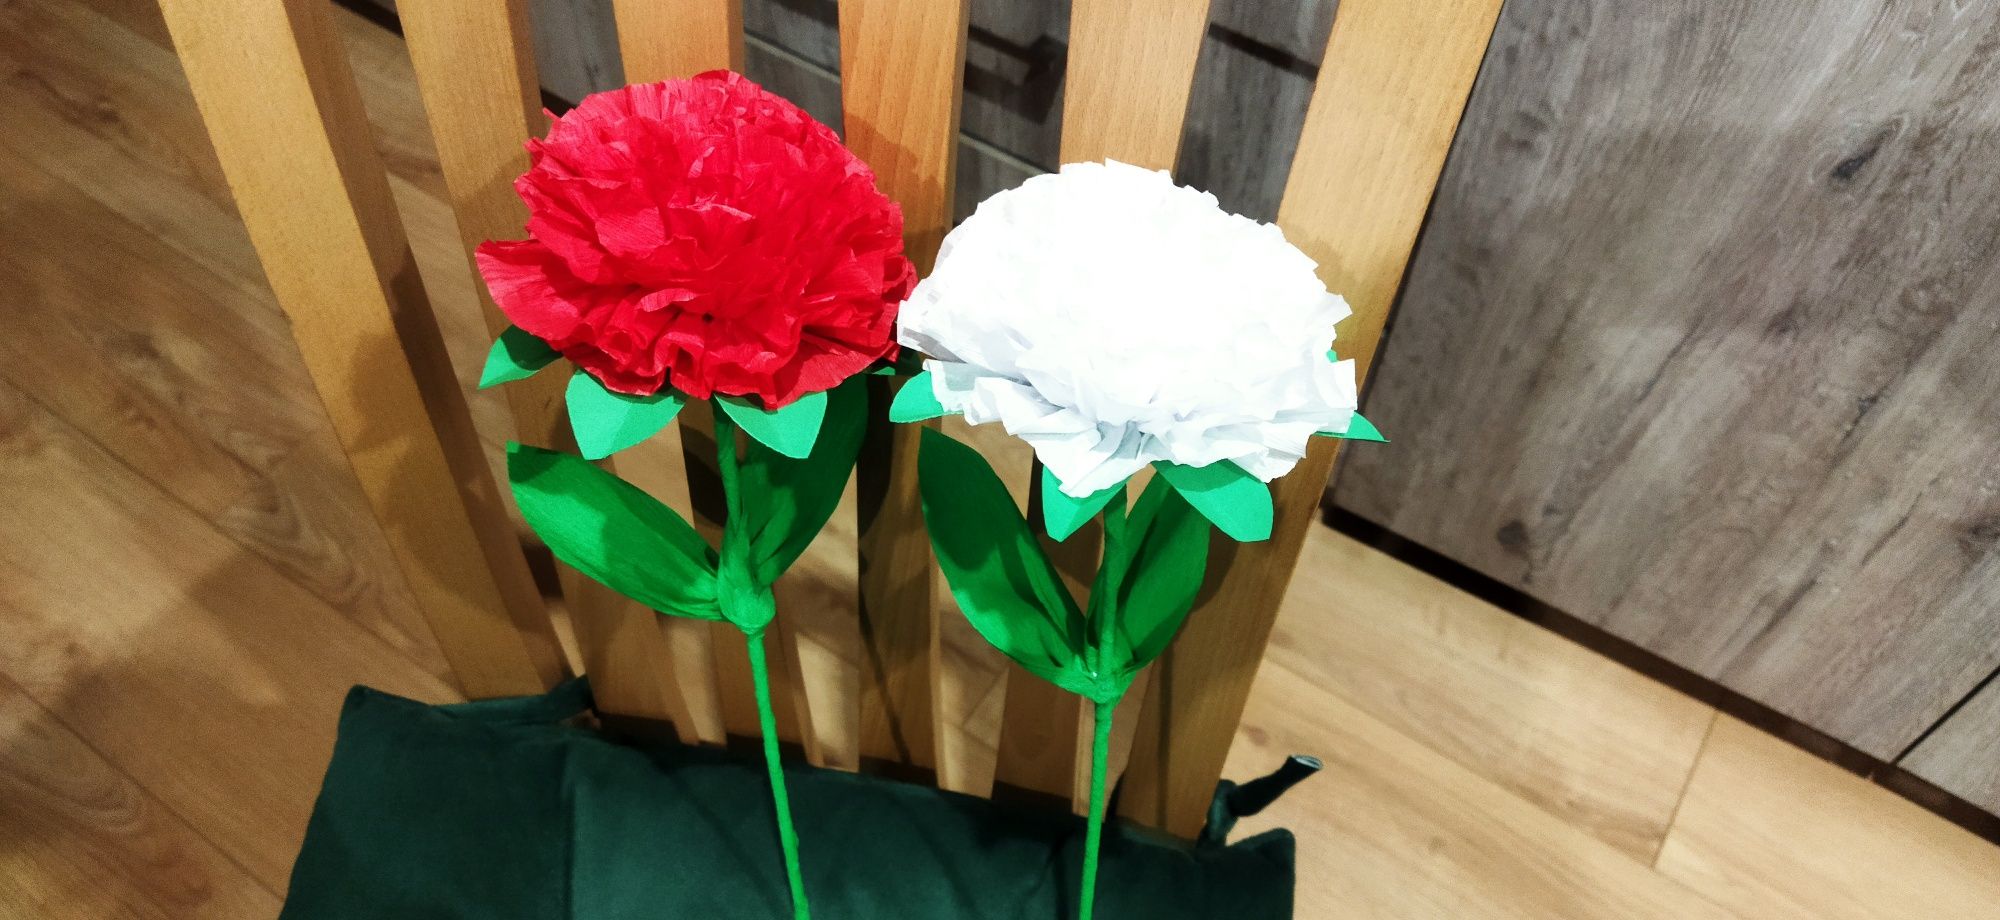 Kwiaty z bibuły białe i czerwone 3 maja 11 listopada Święto Niepodległ